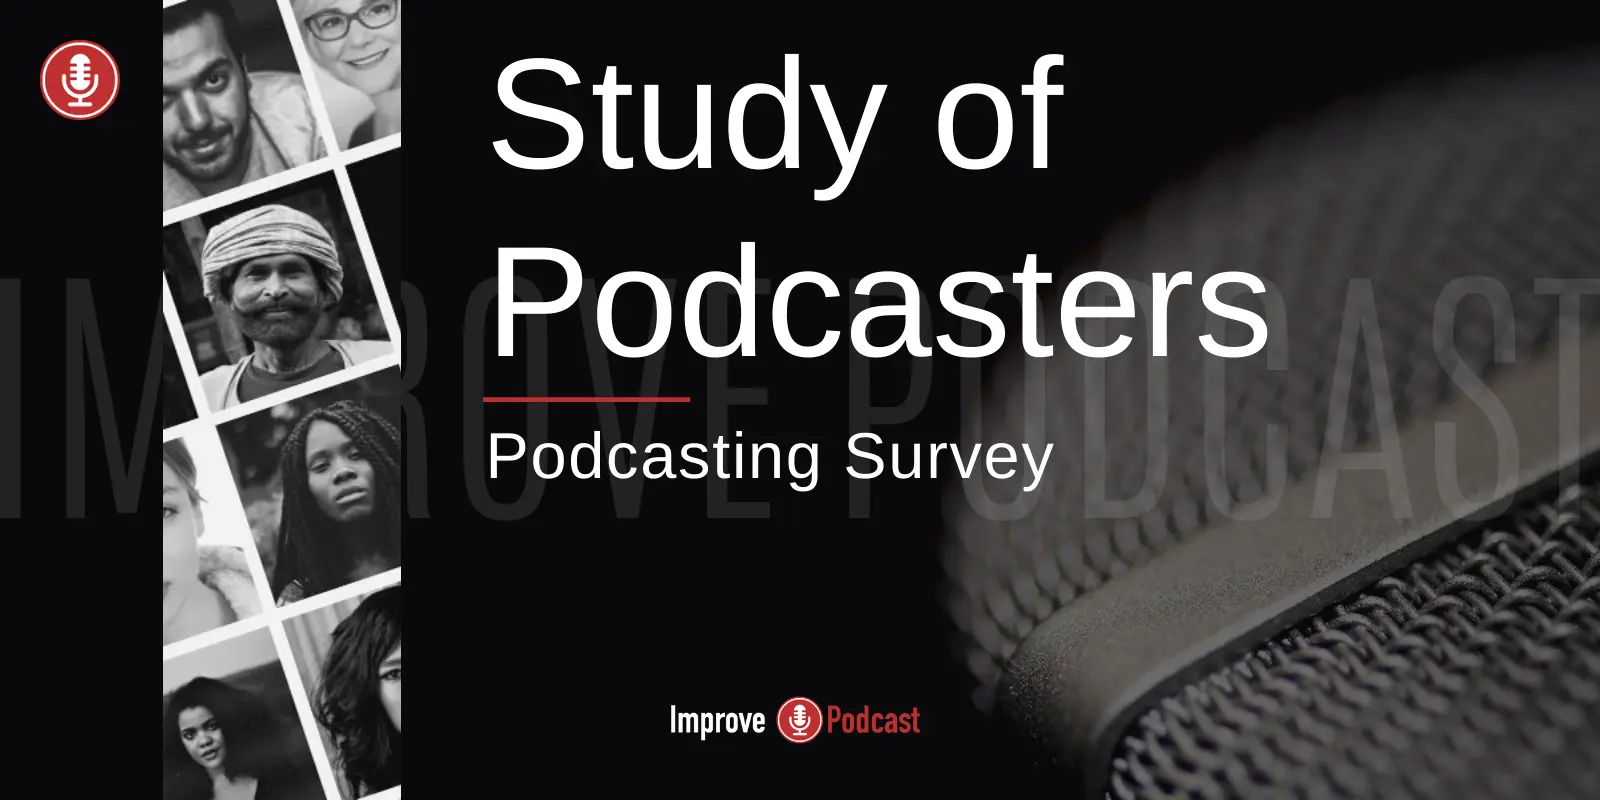 Podcasting Survey Study Statistics